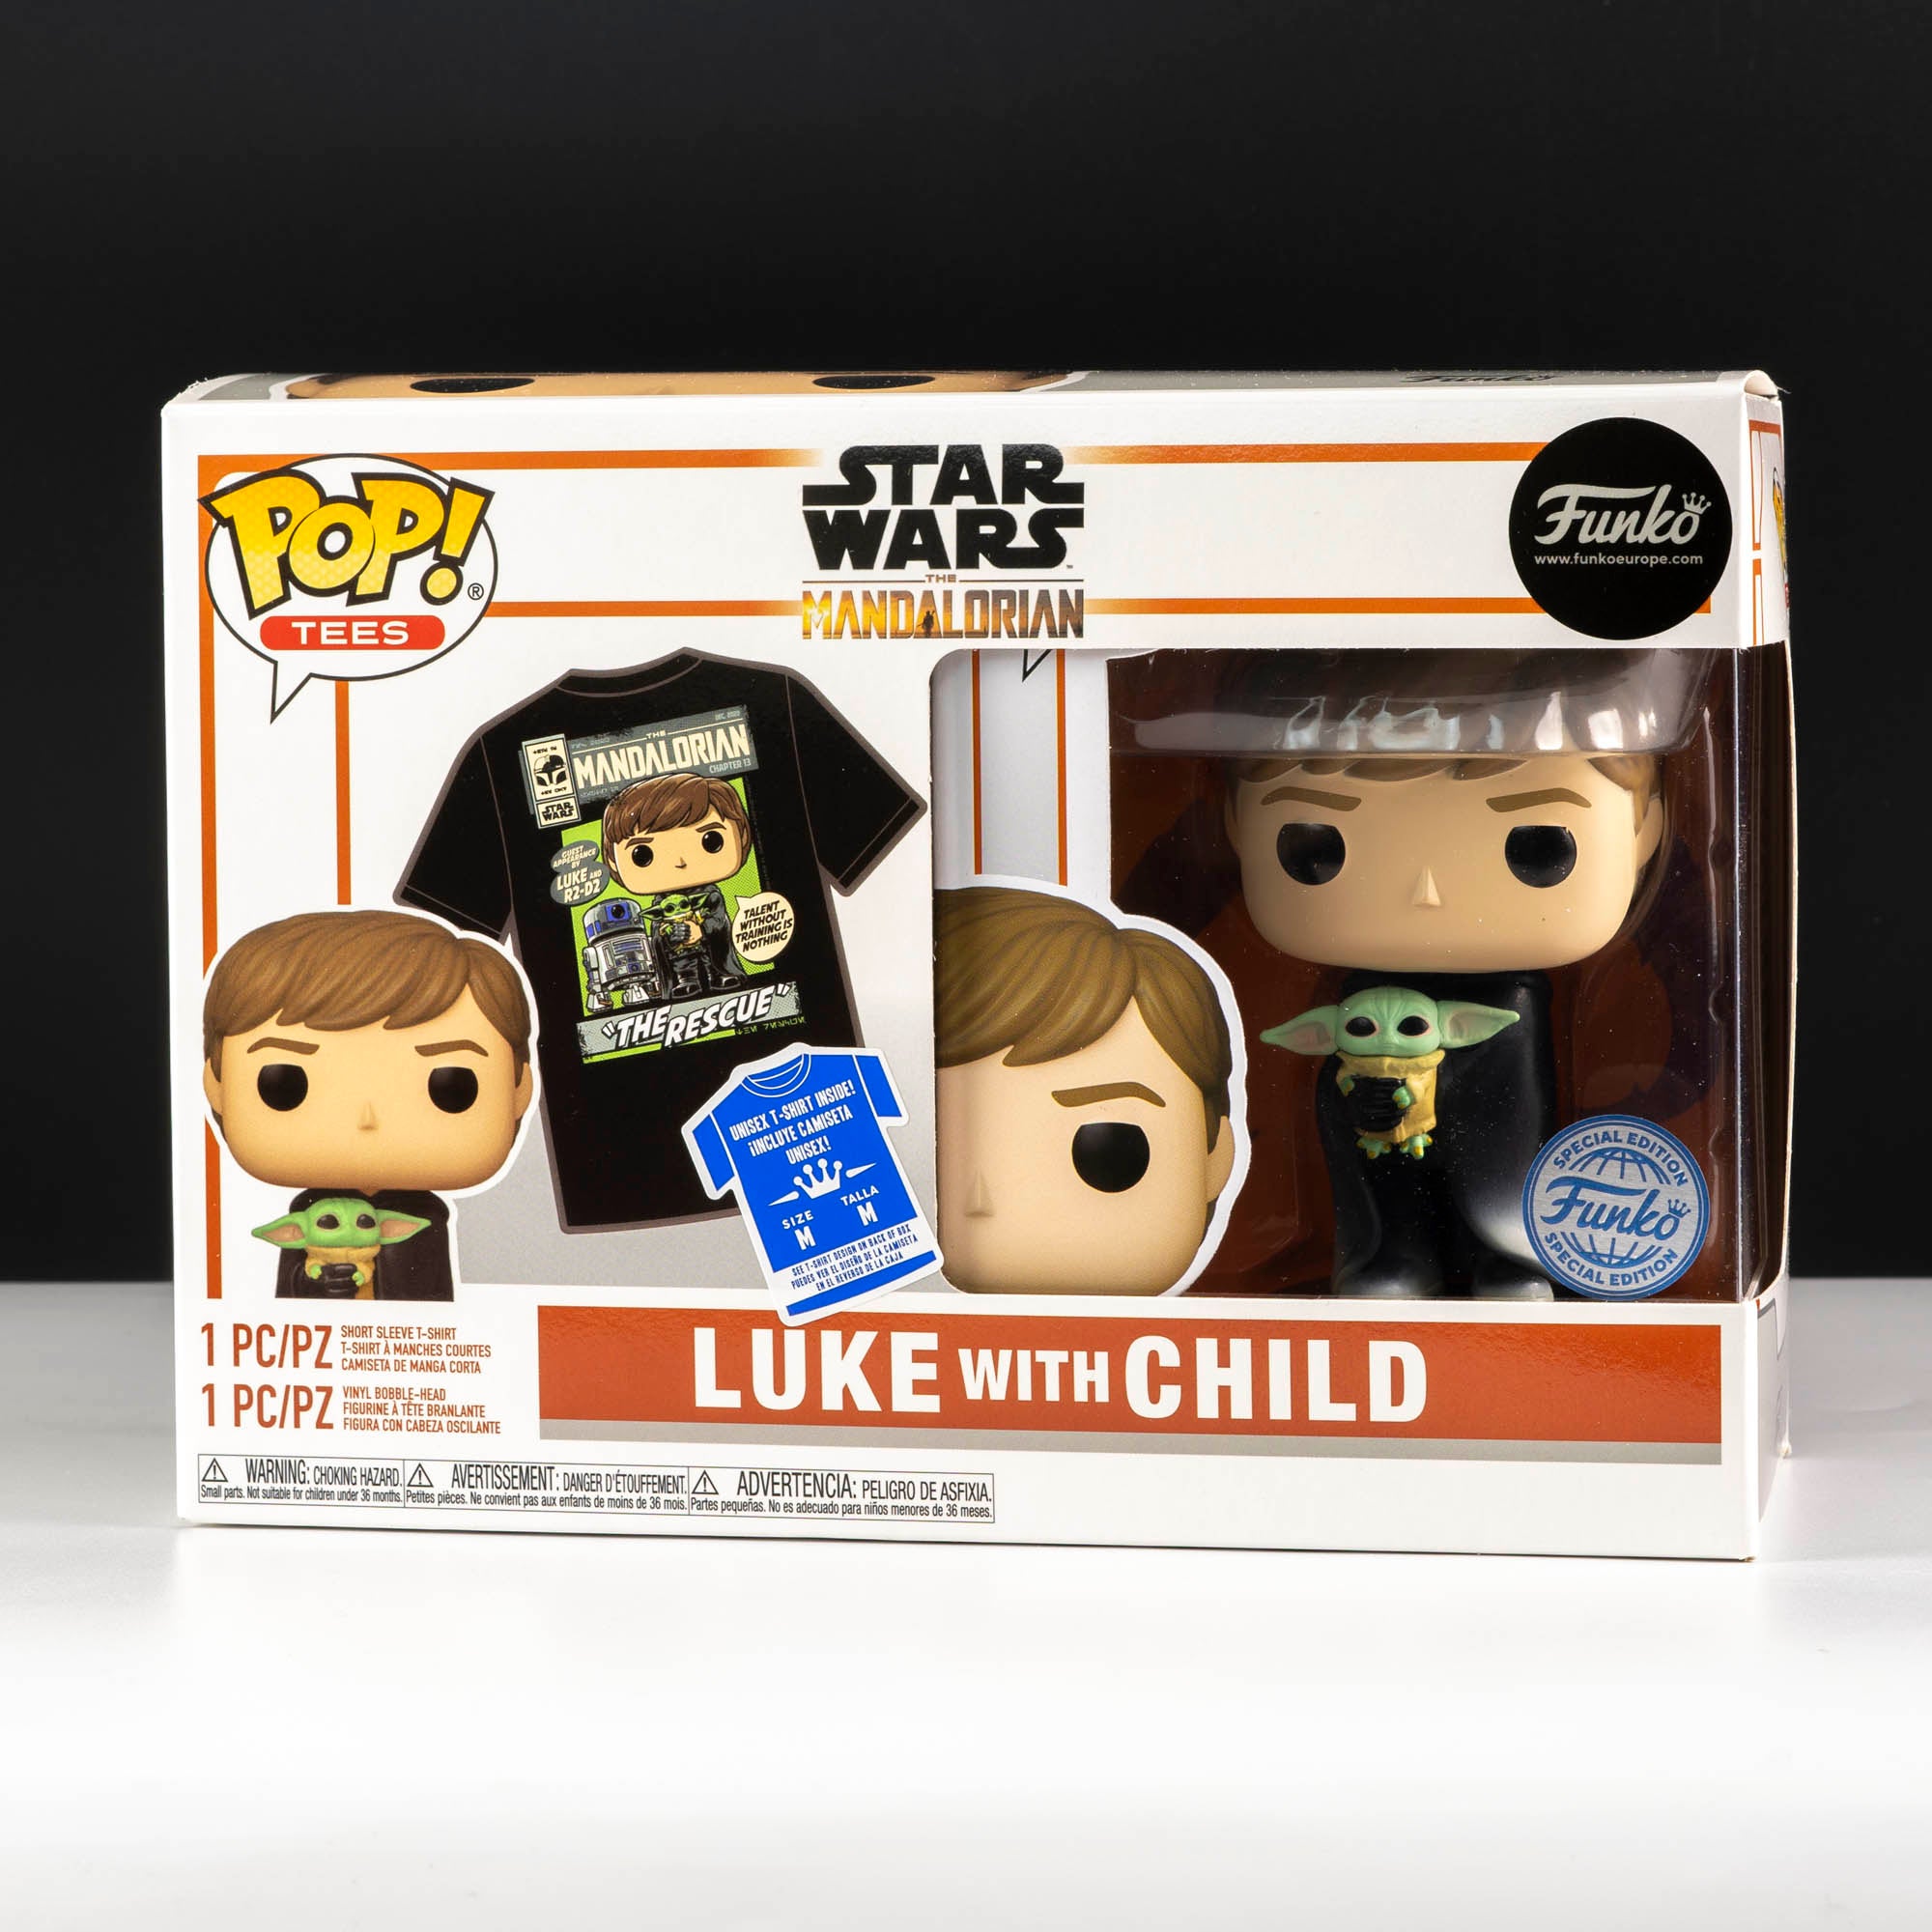 Star Wars The Mandalorian Luke Skywalker with Grogu Pop! Vinyl and Tee Set